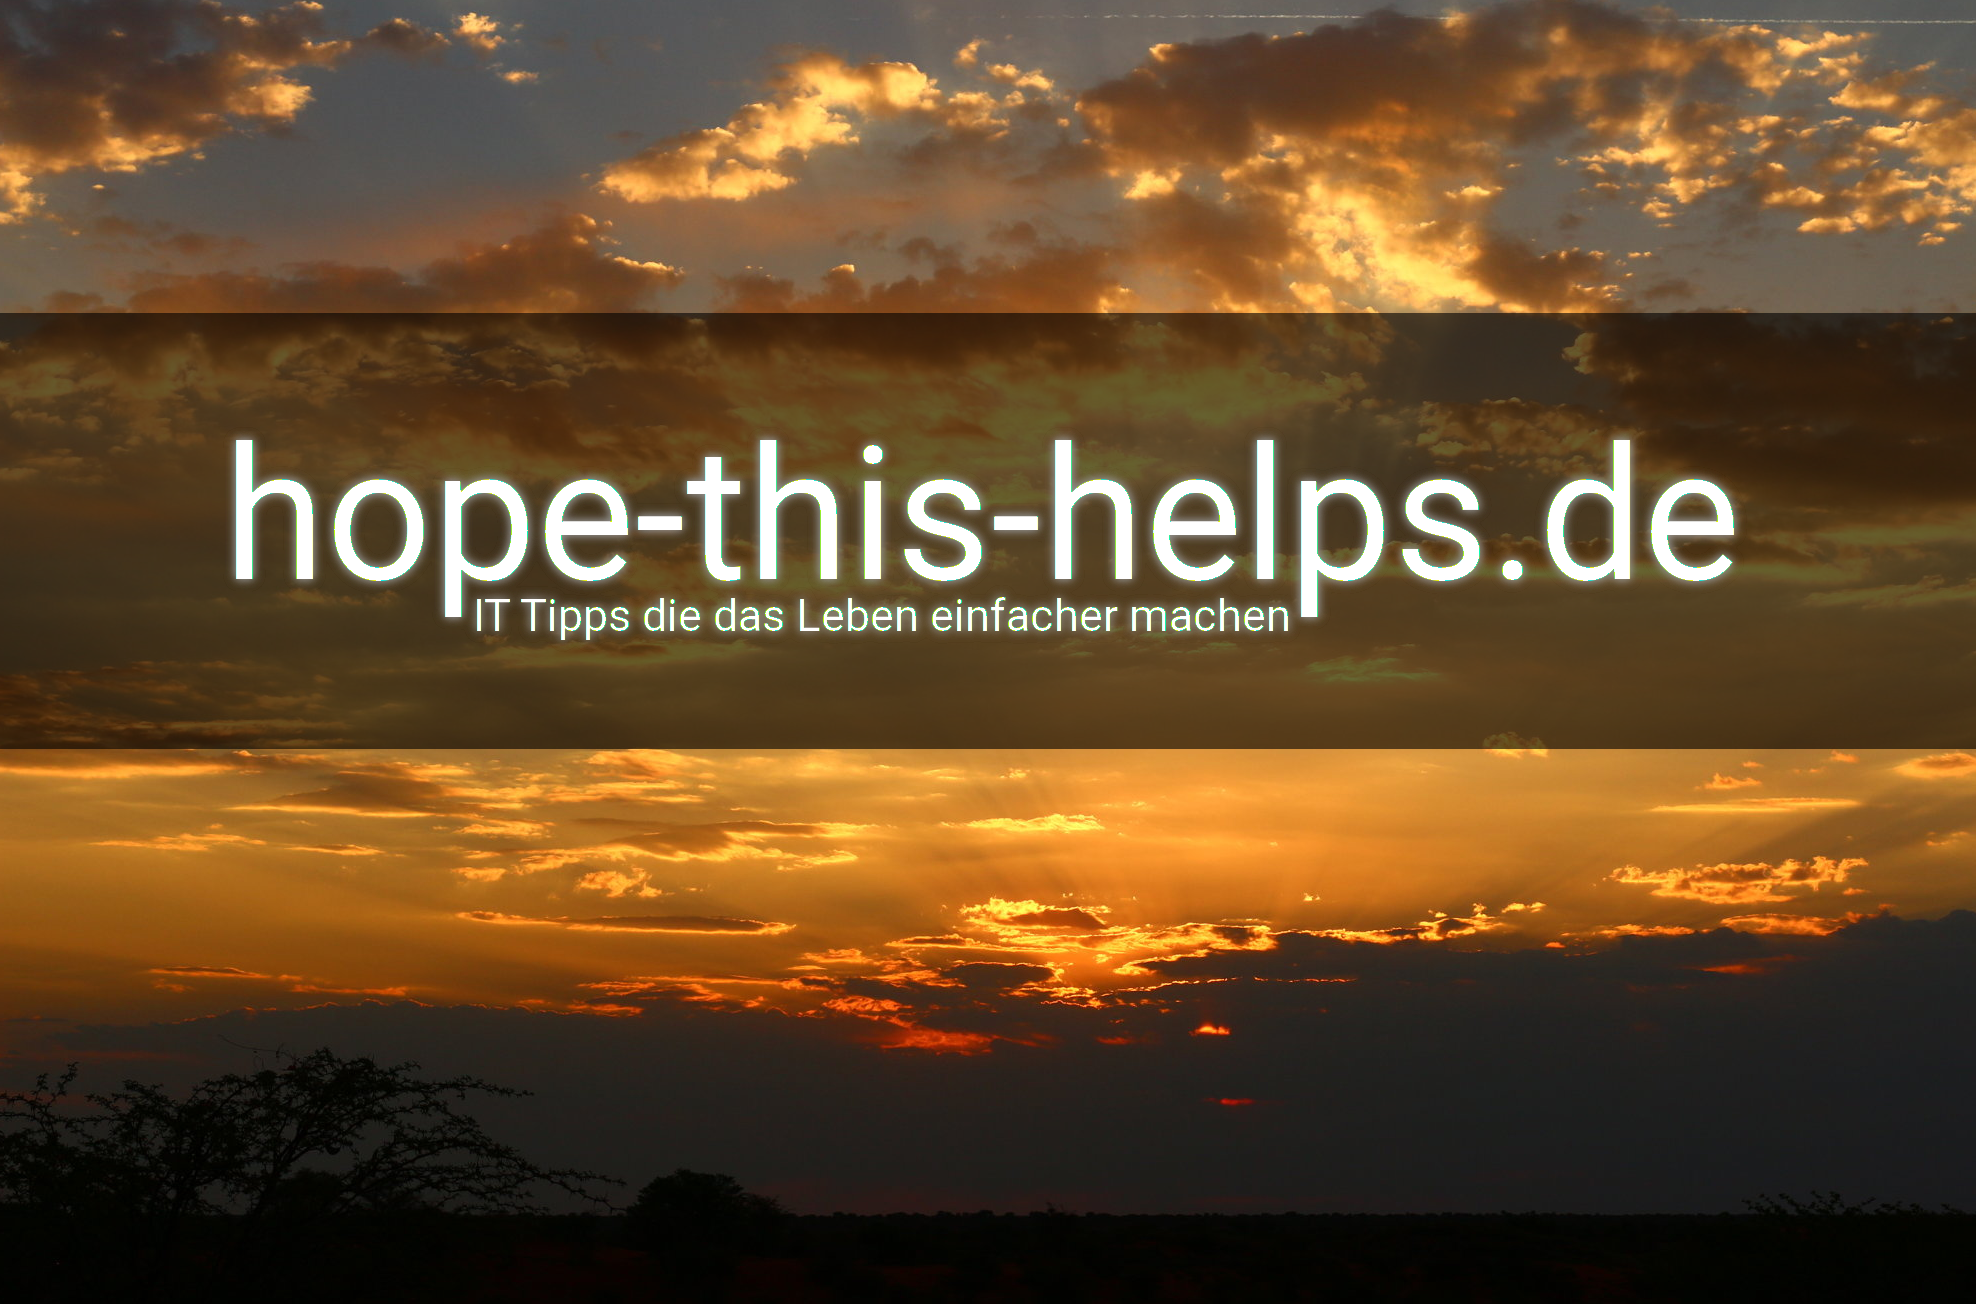 (c) Hope-this-helps.de